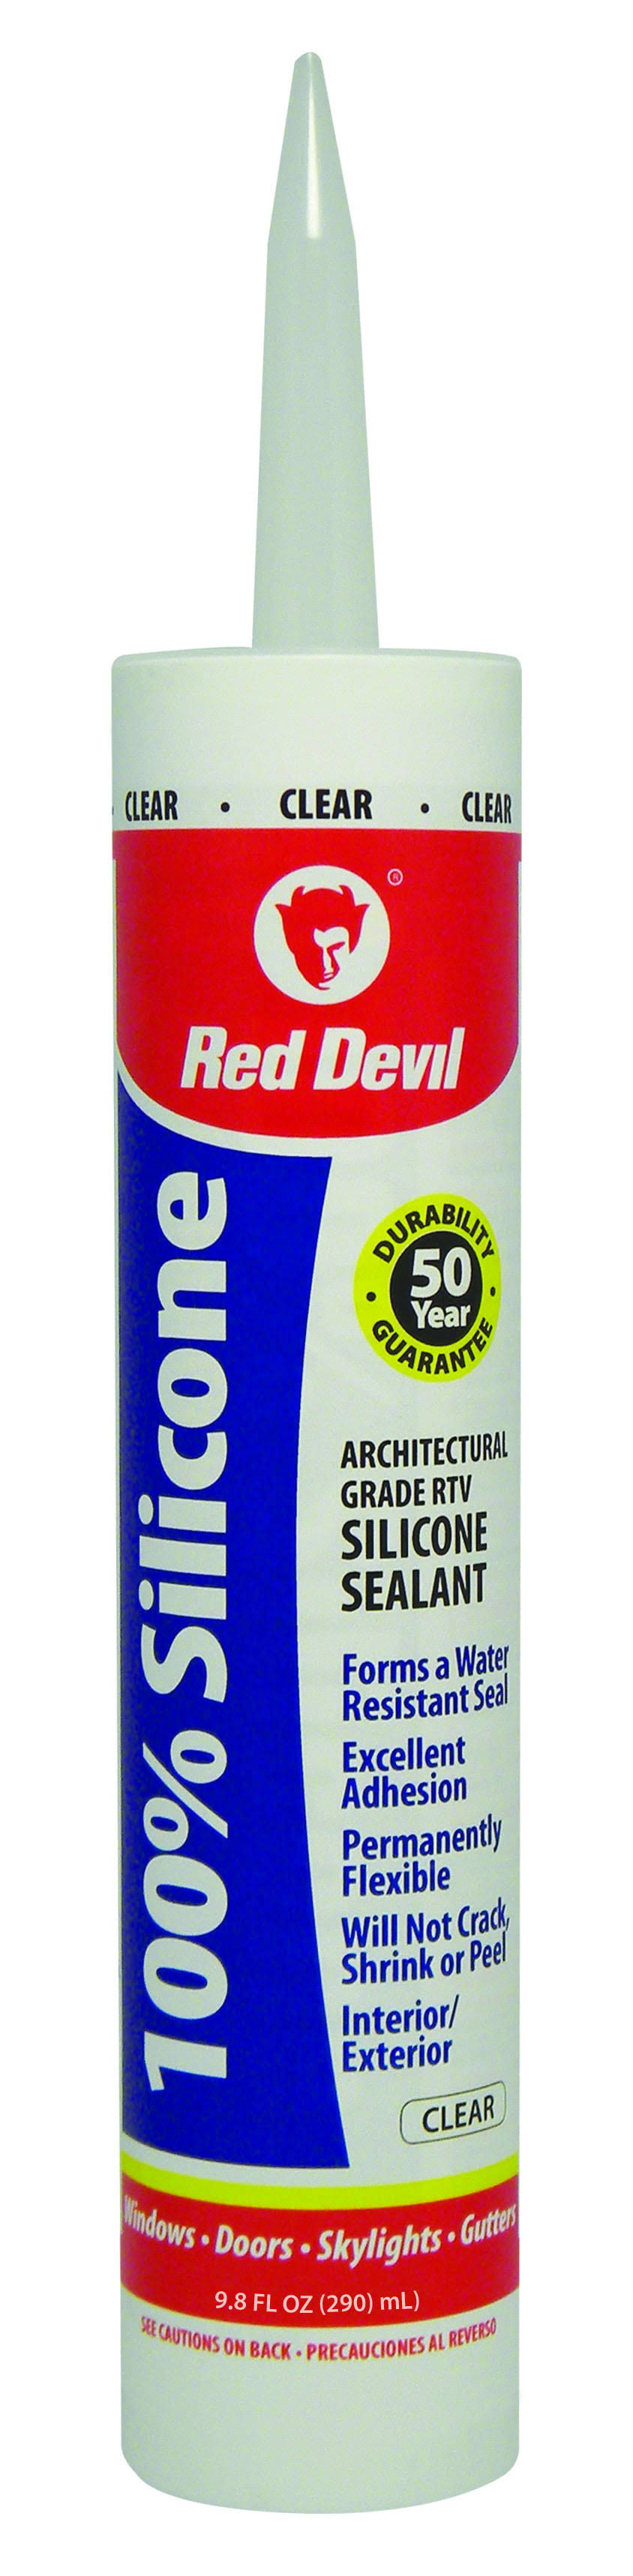 Red Devil 0826 Clear Silicone Sealant - 10.1oz